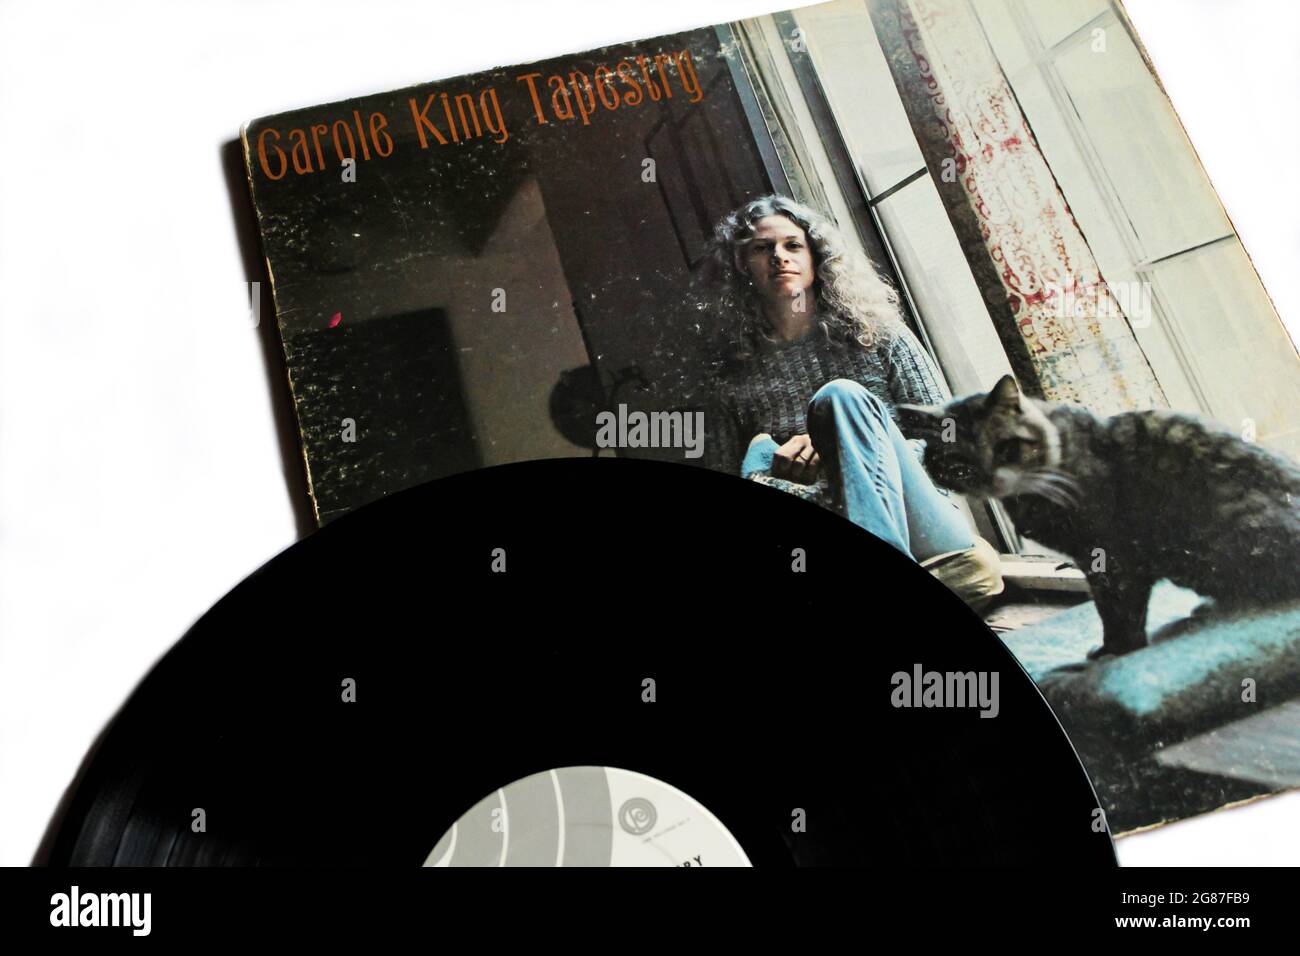 Soft Rock und Pop Artist, Carole King Musikalbum auf Vinyl LP Disc. Titel: Tapestry Album Cover Stockfoto